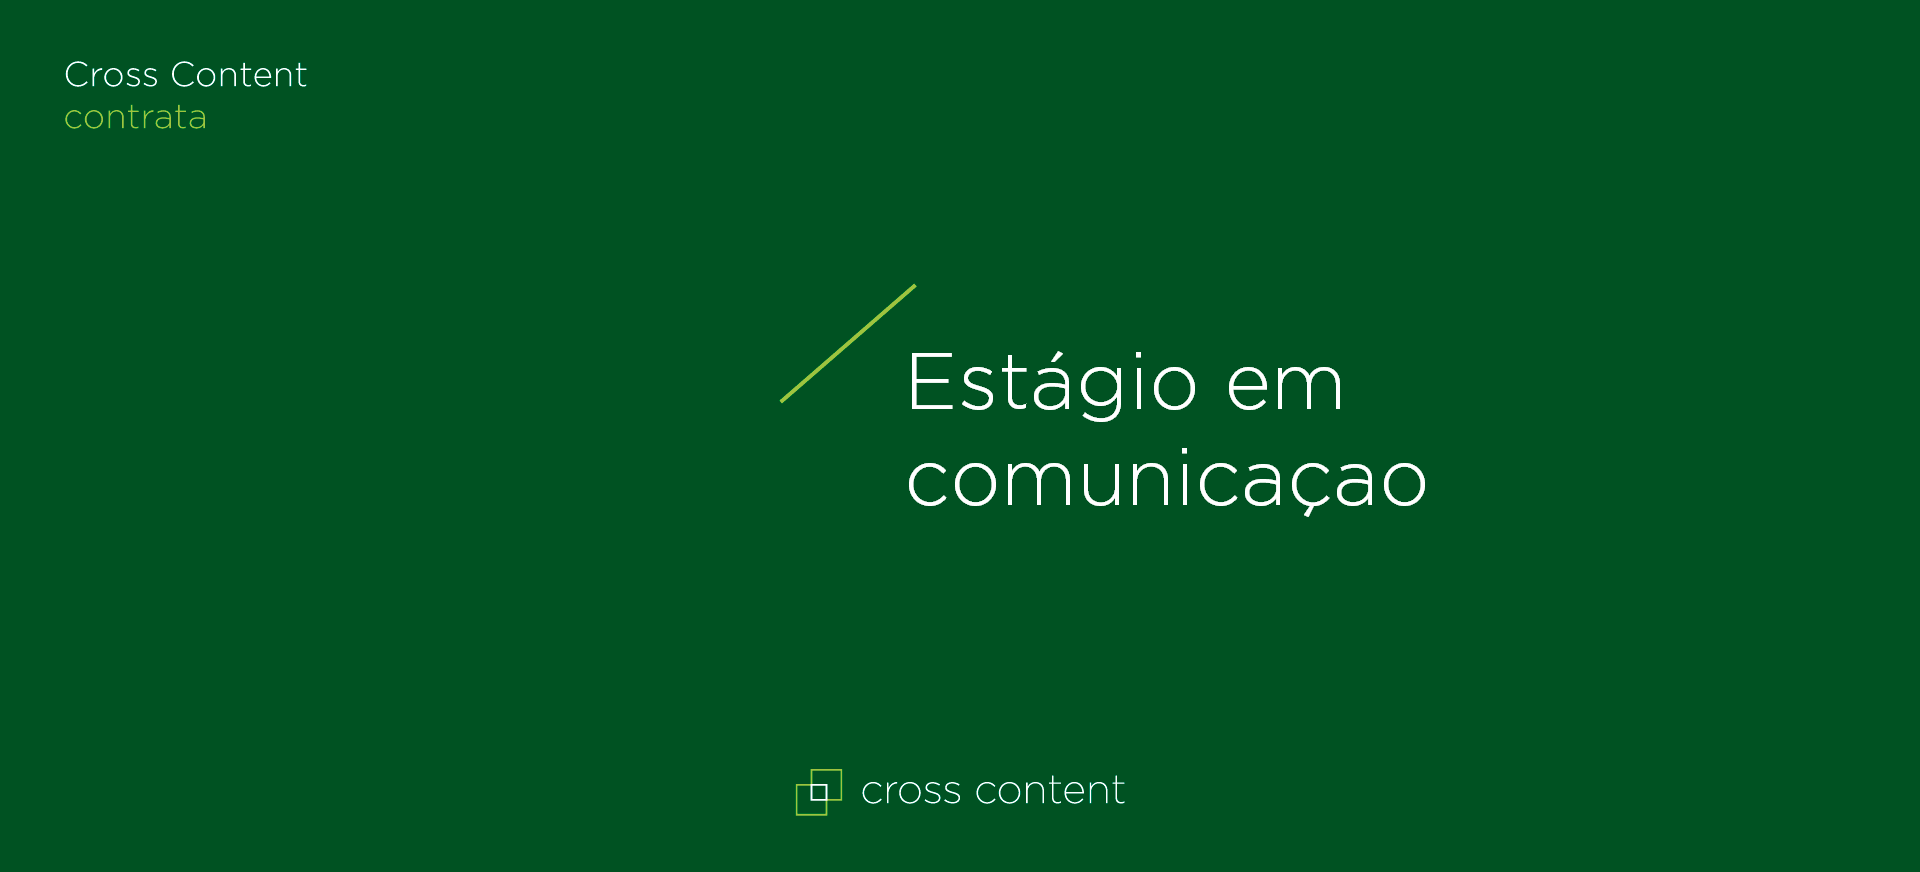 Cross Content - Estágio em comunicação